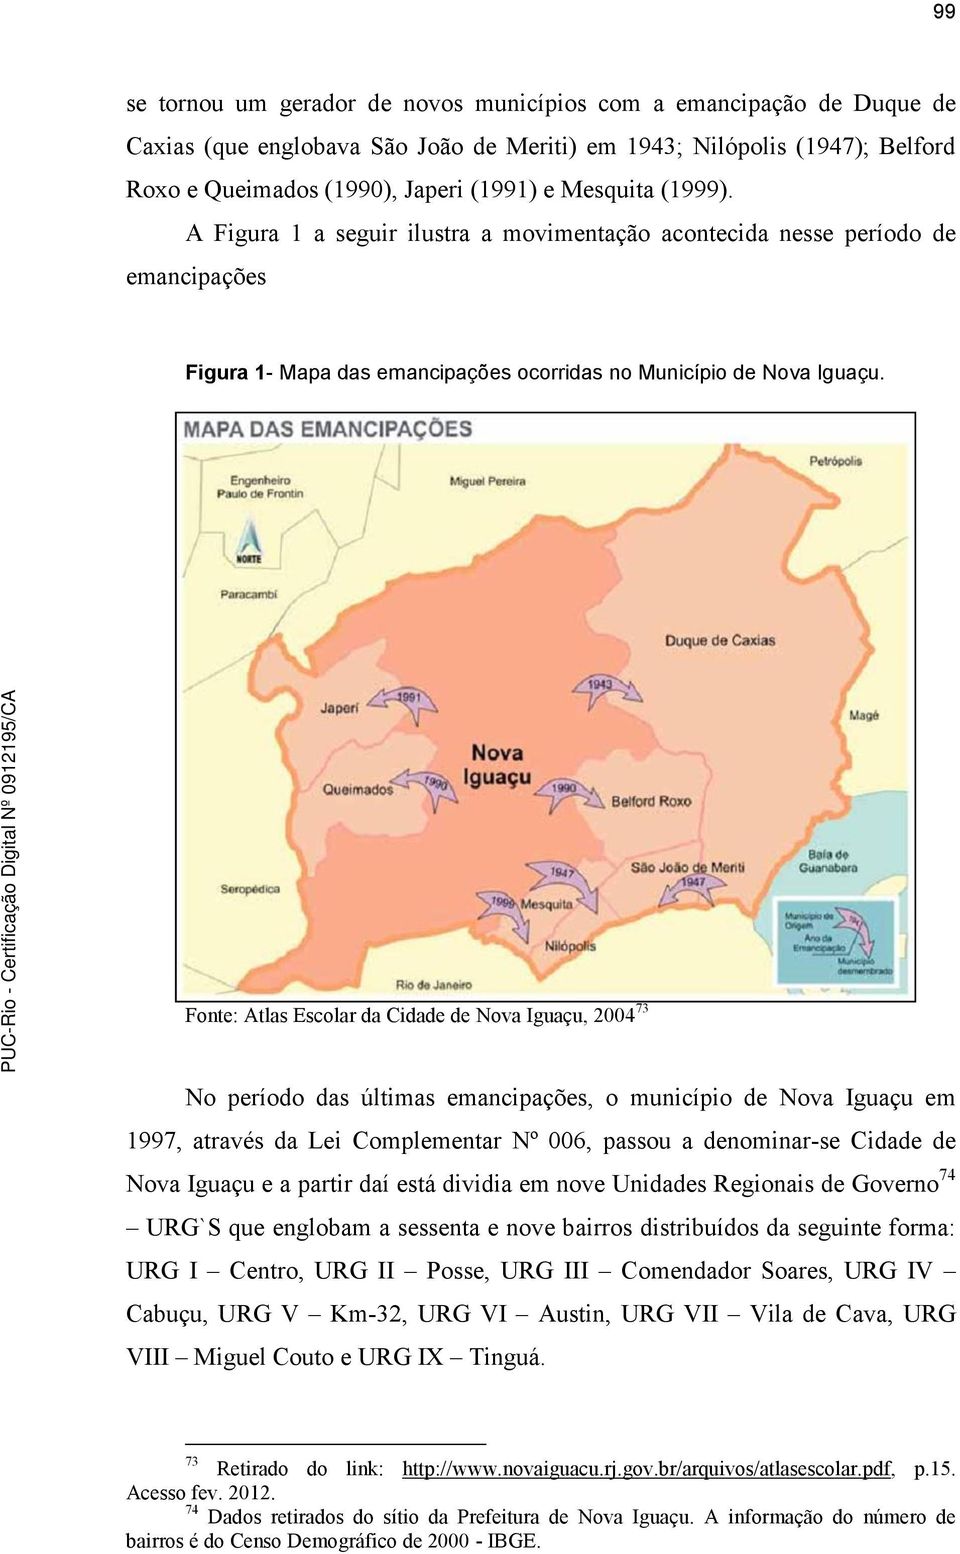 Fonte: Atlas Escolar da Cidade de Nova Iguaçu, 2004 73 No período das últimas emancipações, o município de Nova Iguaçu em 1997, através da Lei Complementar Nº 006, passou a denominar-se Cidade de